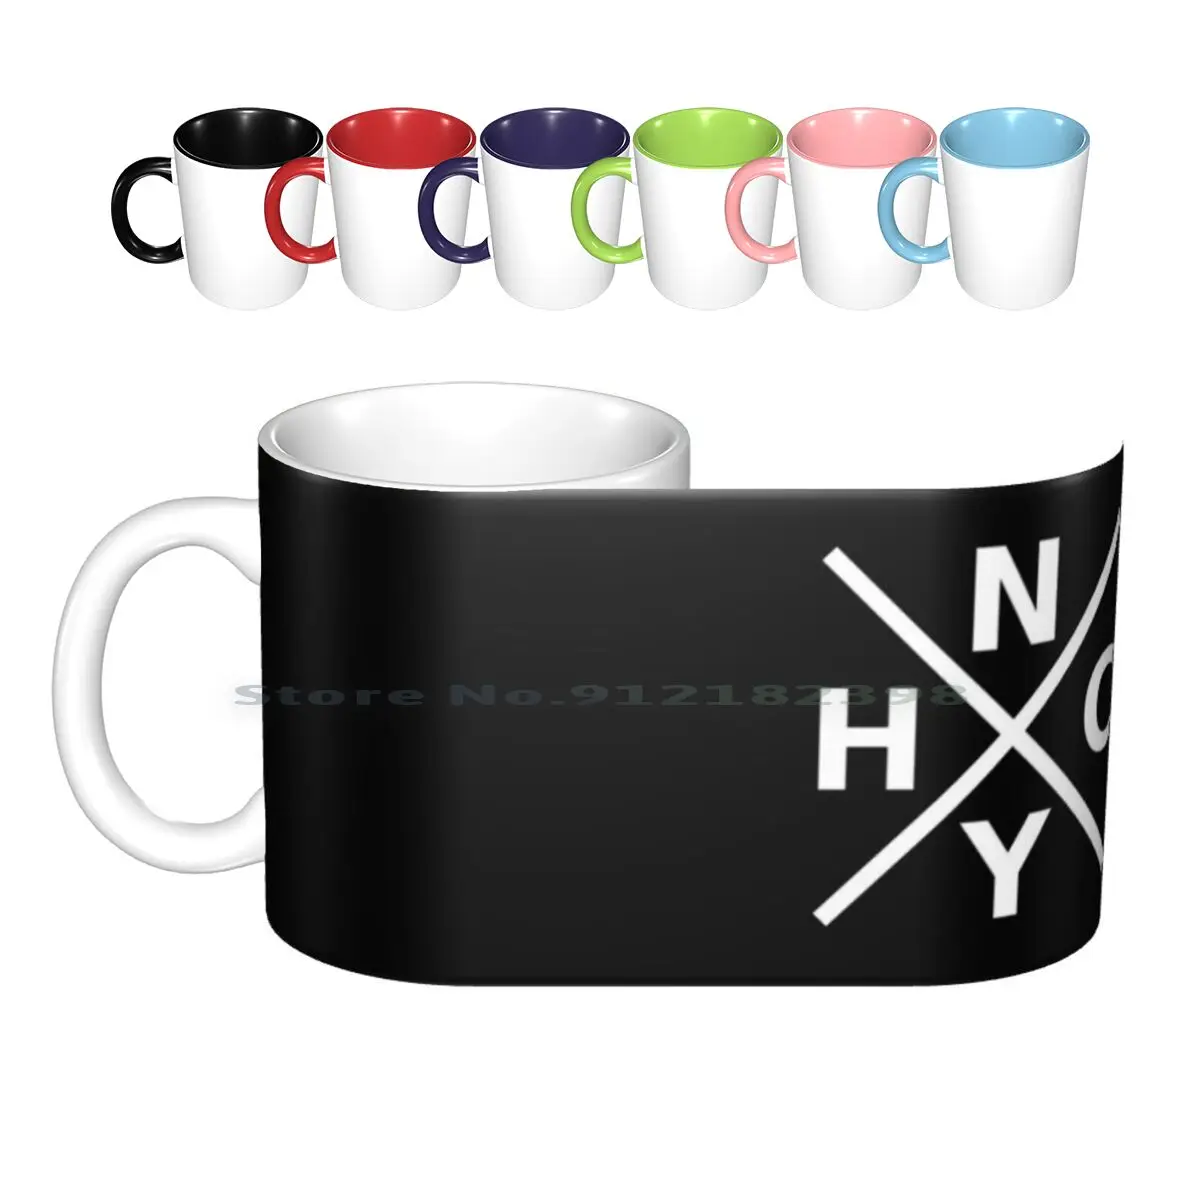 

Nyhc-Нью-Йорк хардкор логотип Белый шрифт Керамические Кружки Кофейные чашки молочный чай Кружка Nyhc музыка хардкор панк Нью-Йорк